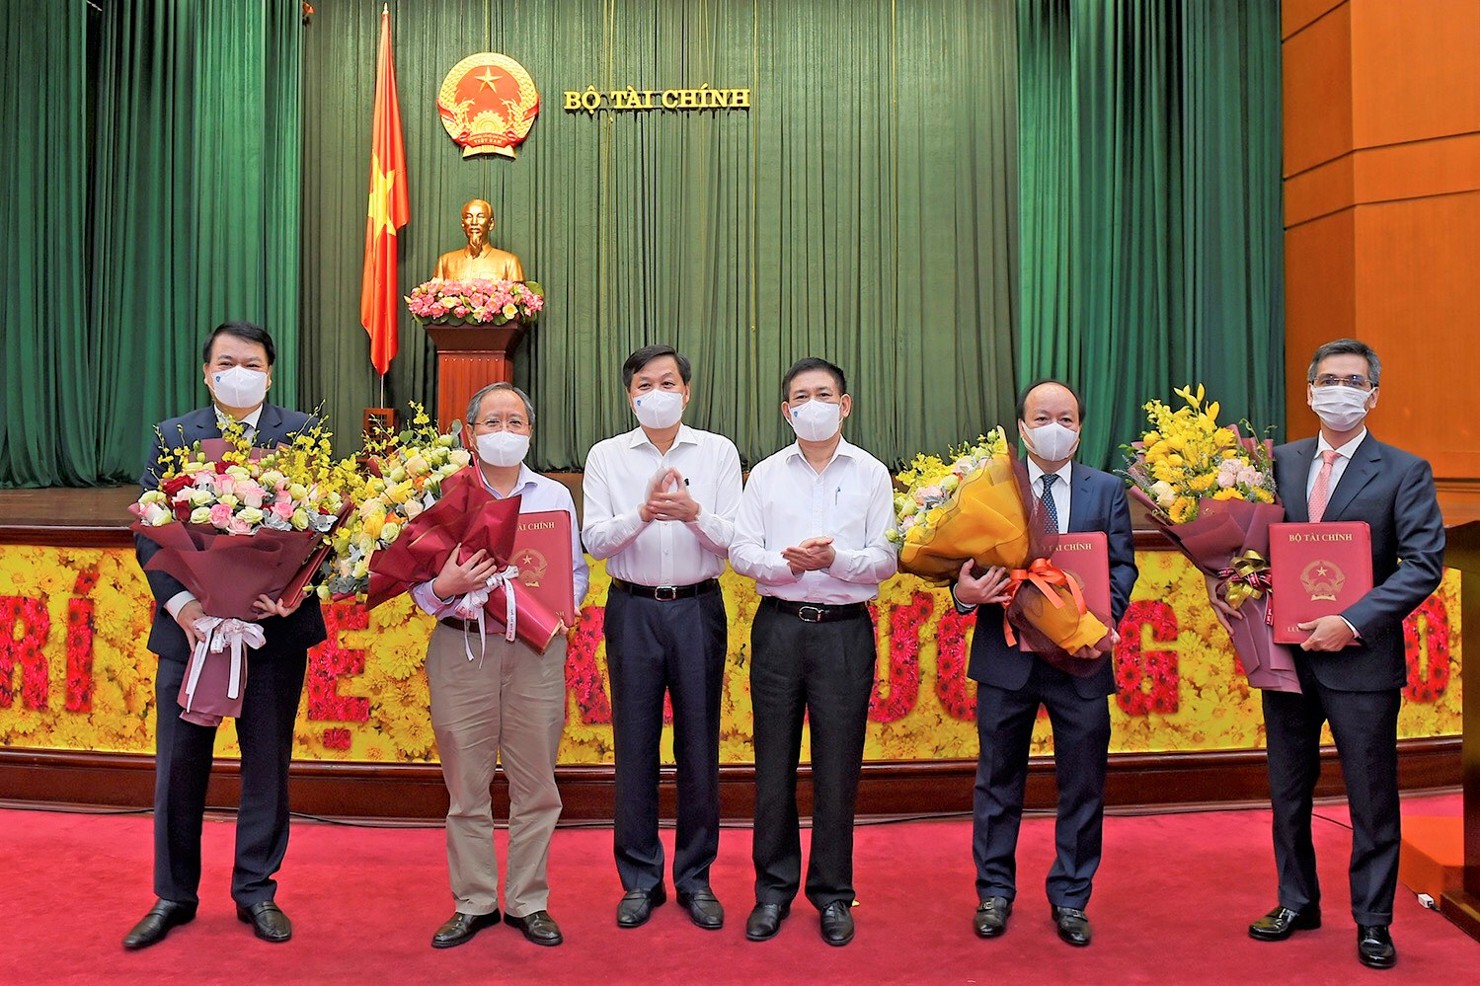 Phó Thủ tướng Chính phủ Lê Minh Khái và Bộ trưởng Bộ Tài chính Hồ Đức Phớc trao quyết định và tặng hoa các Thứ trưởng.